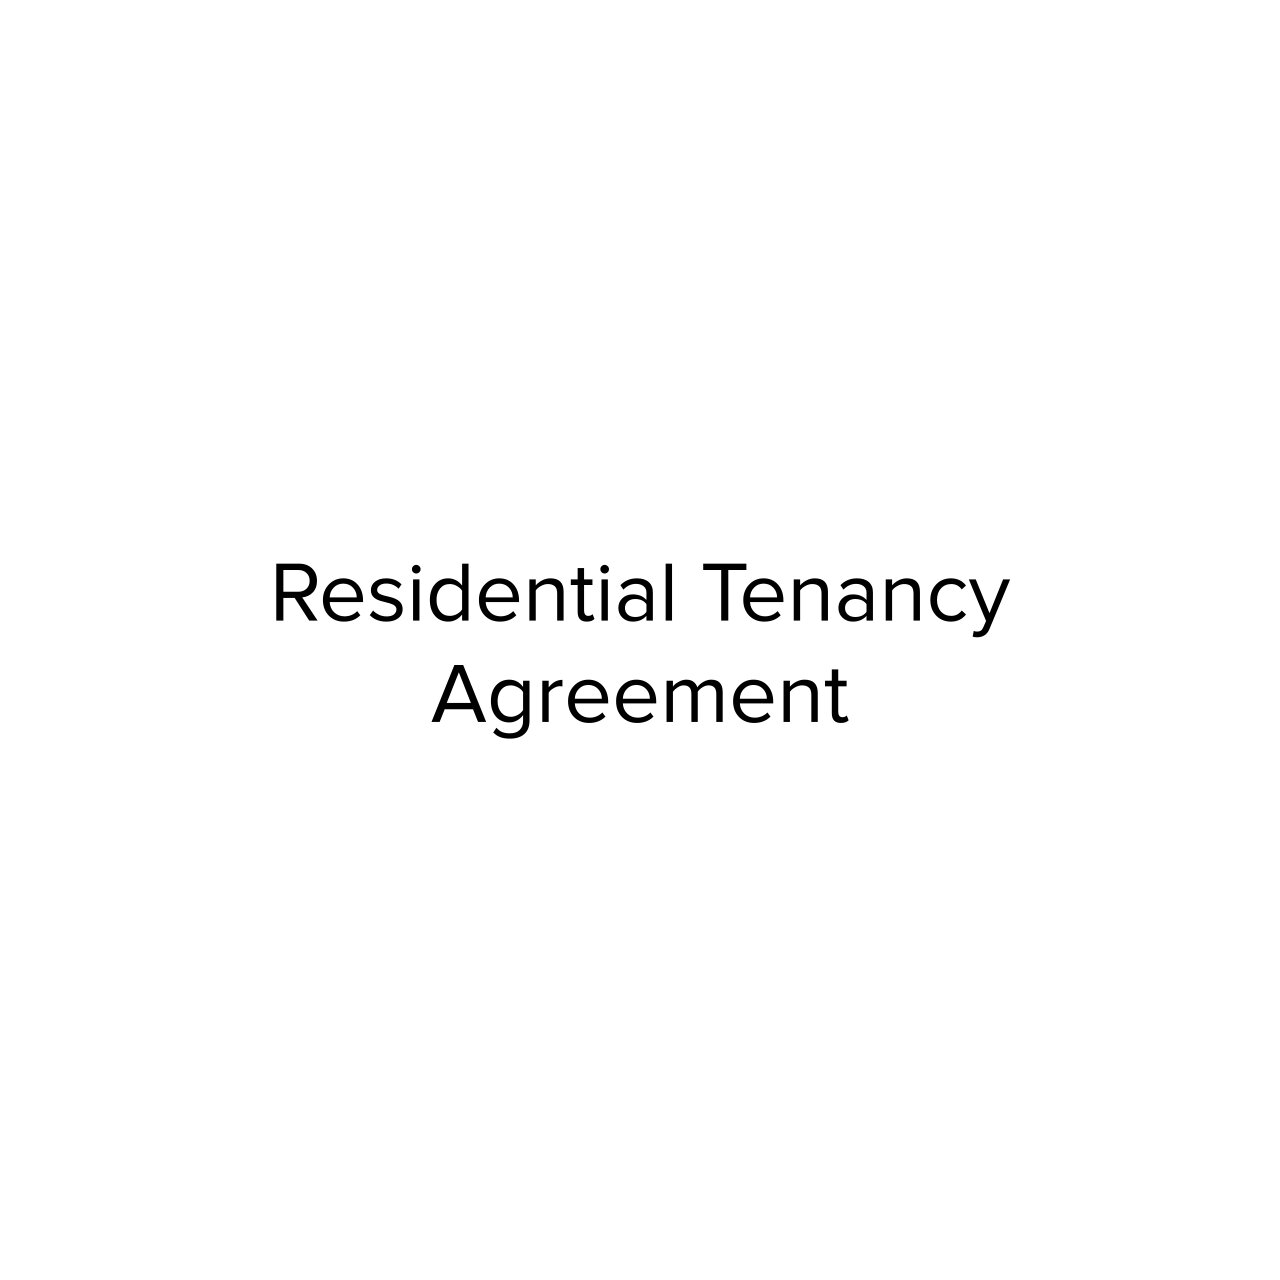 Residential Tenancy Agreement.jpg